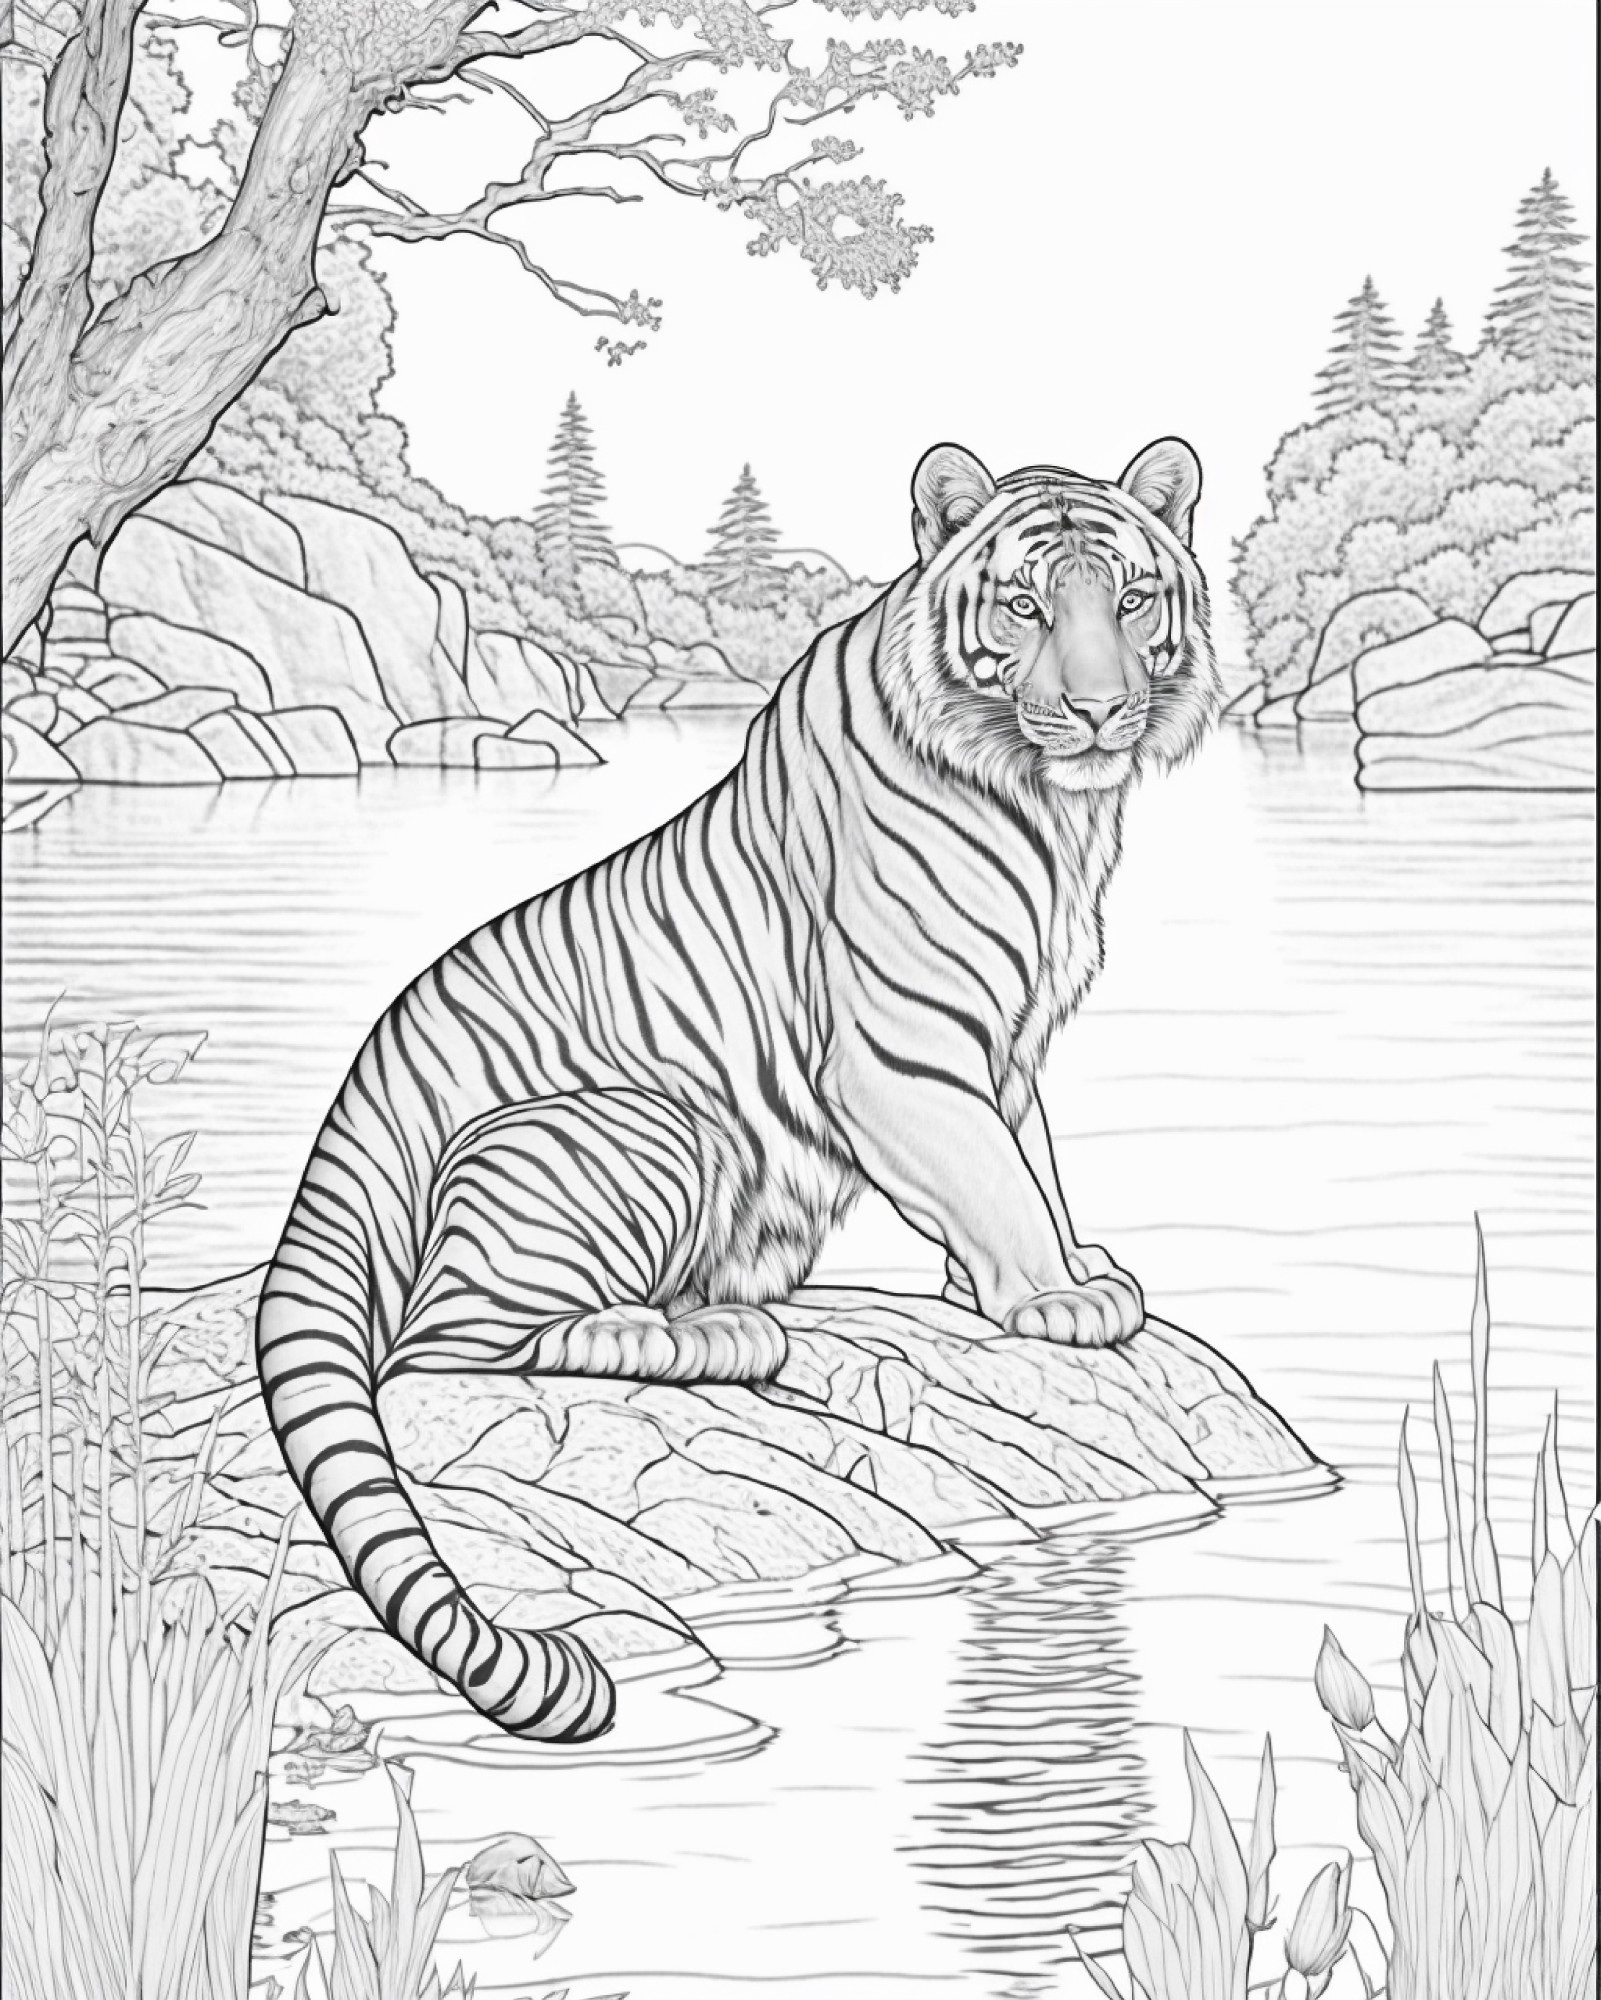 Раскраска для детей: белый тигр в лесу сидит на камне у горной реки